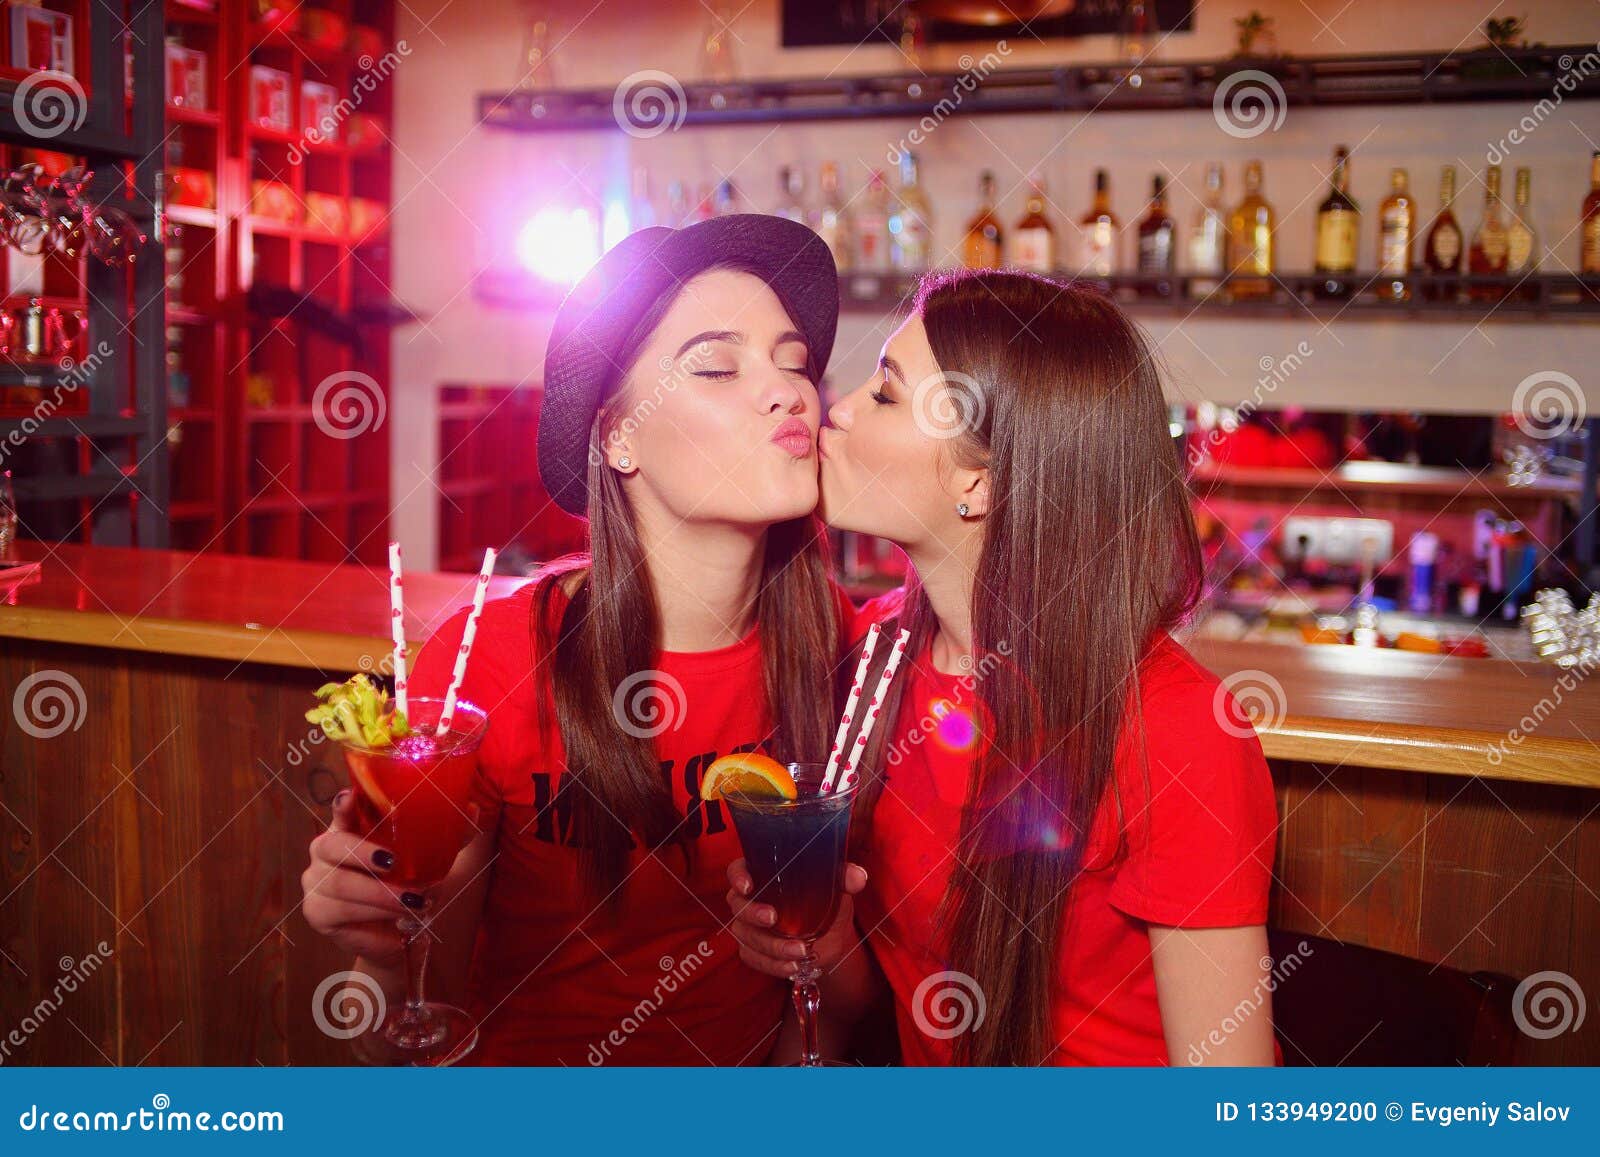 lesbian girl kissing on girl